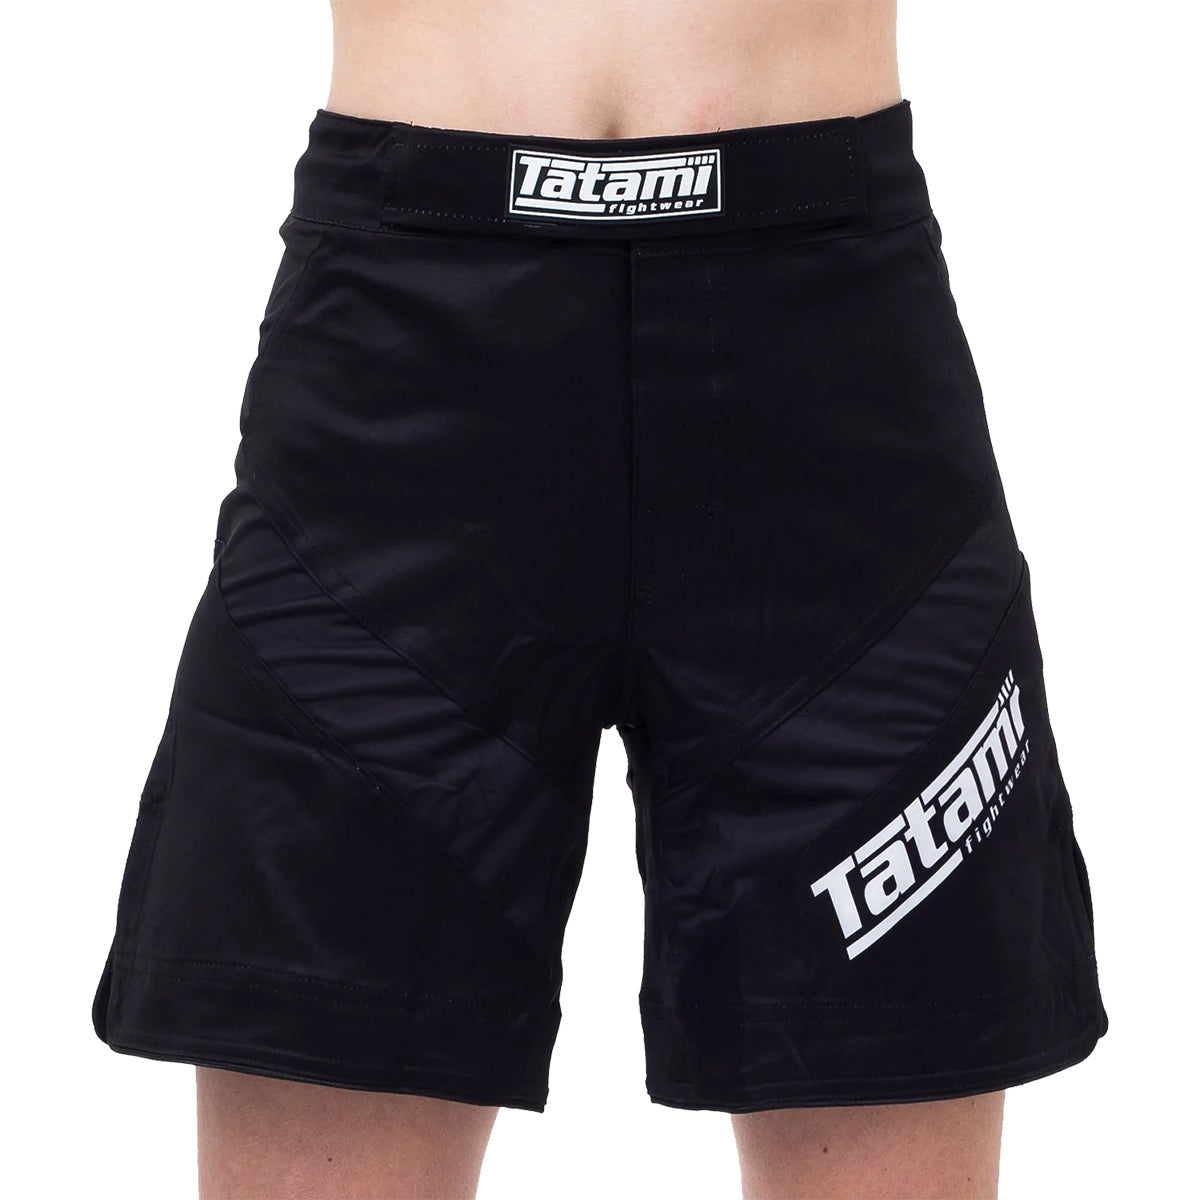 Tatami Fightwear Women's Dynamic Fit IBJJF Fight Shorts - Black Tatami Fightwear